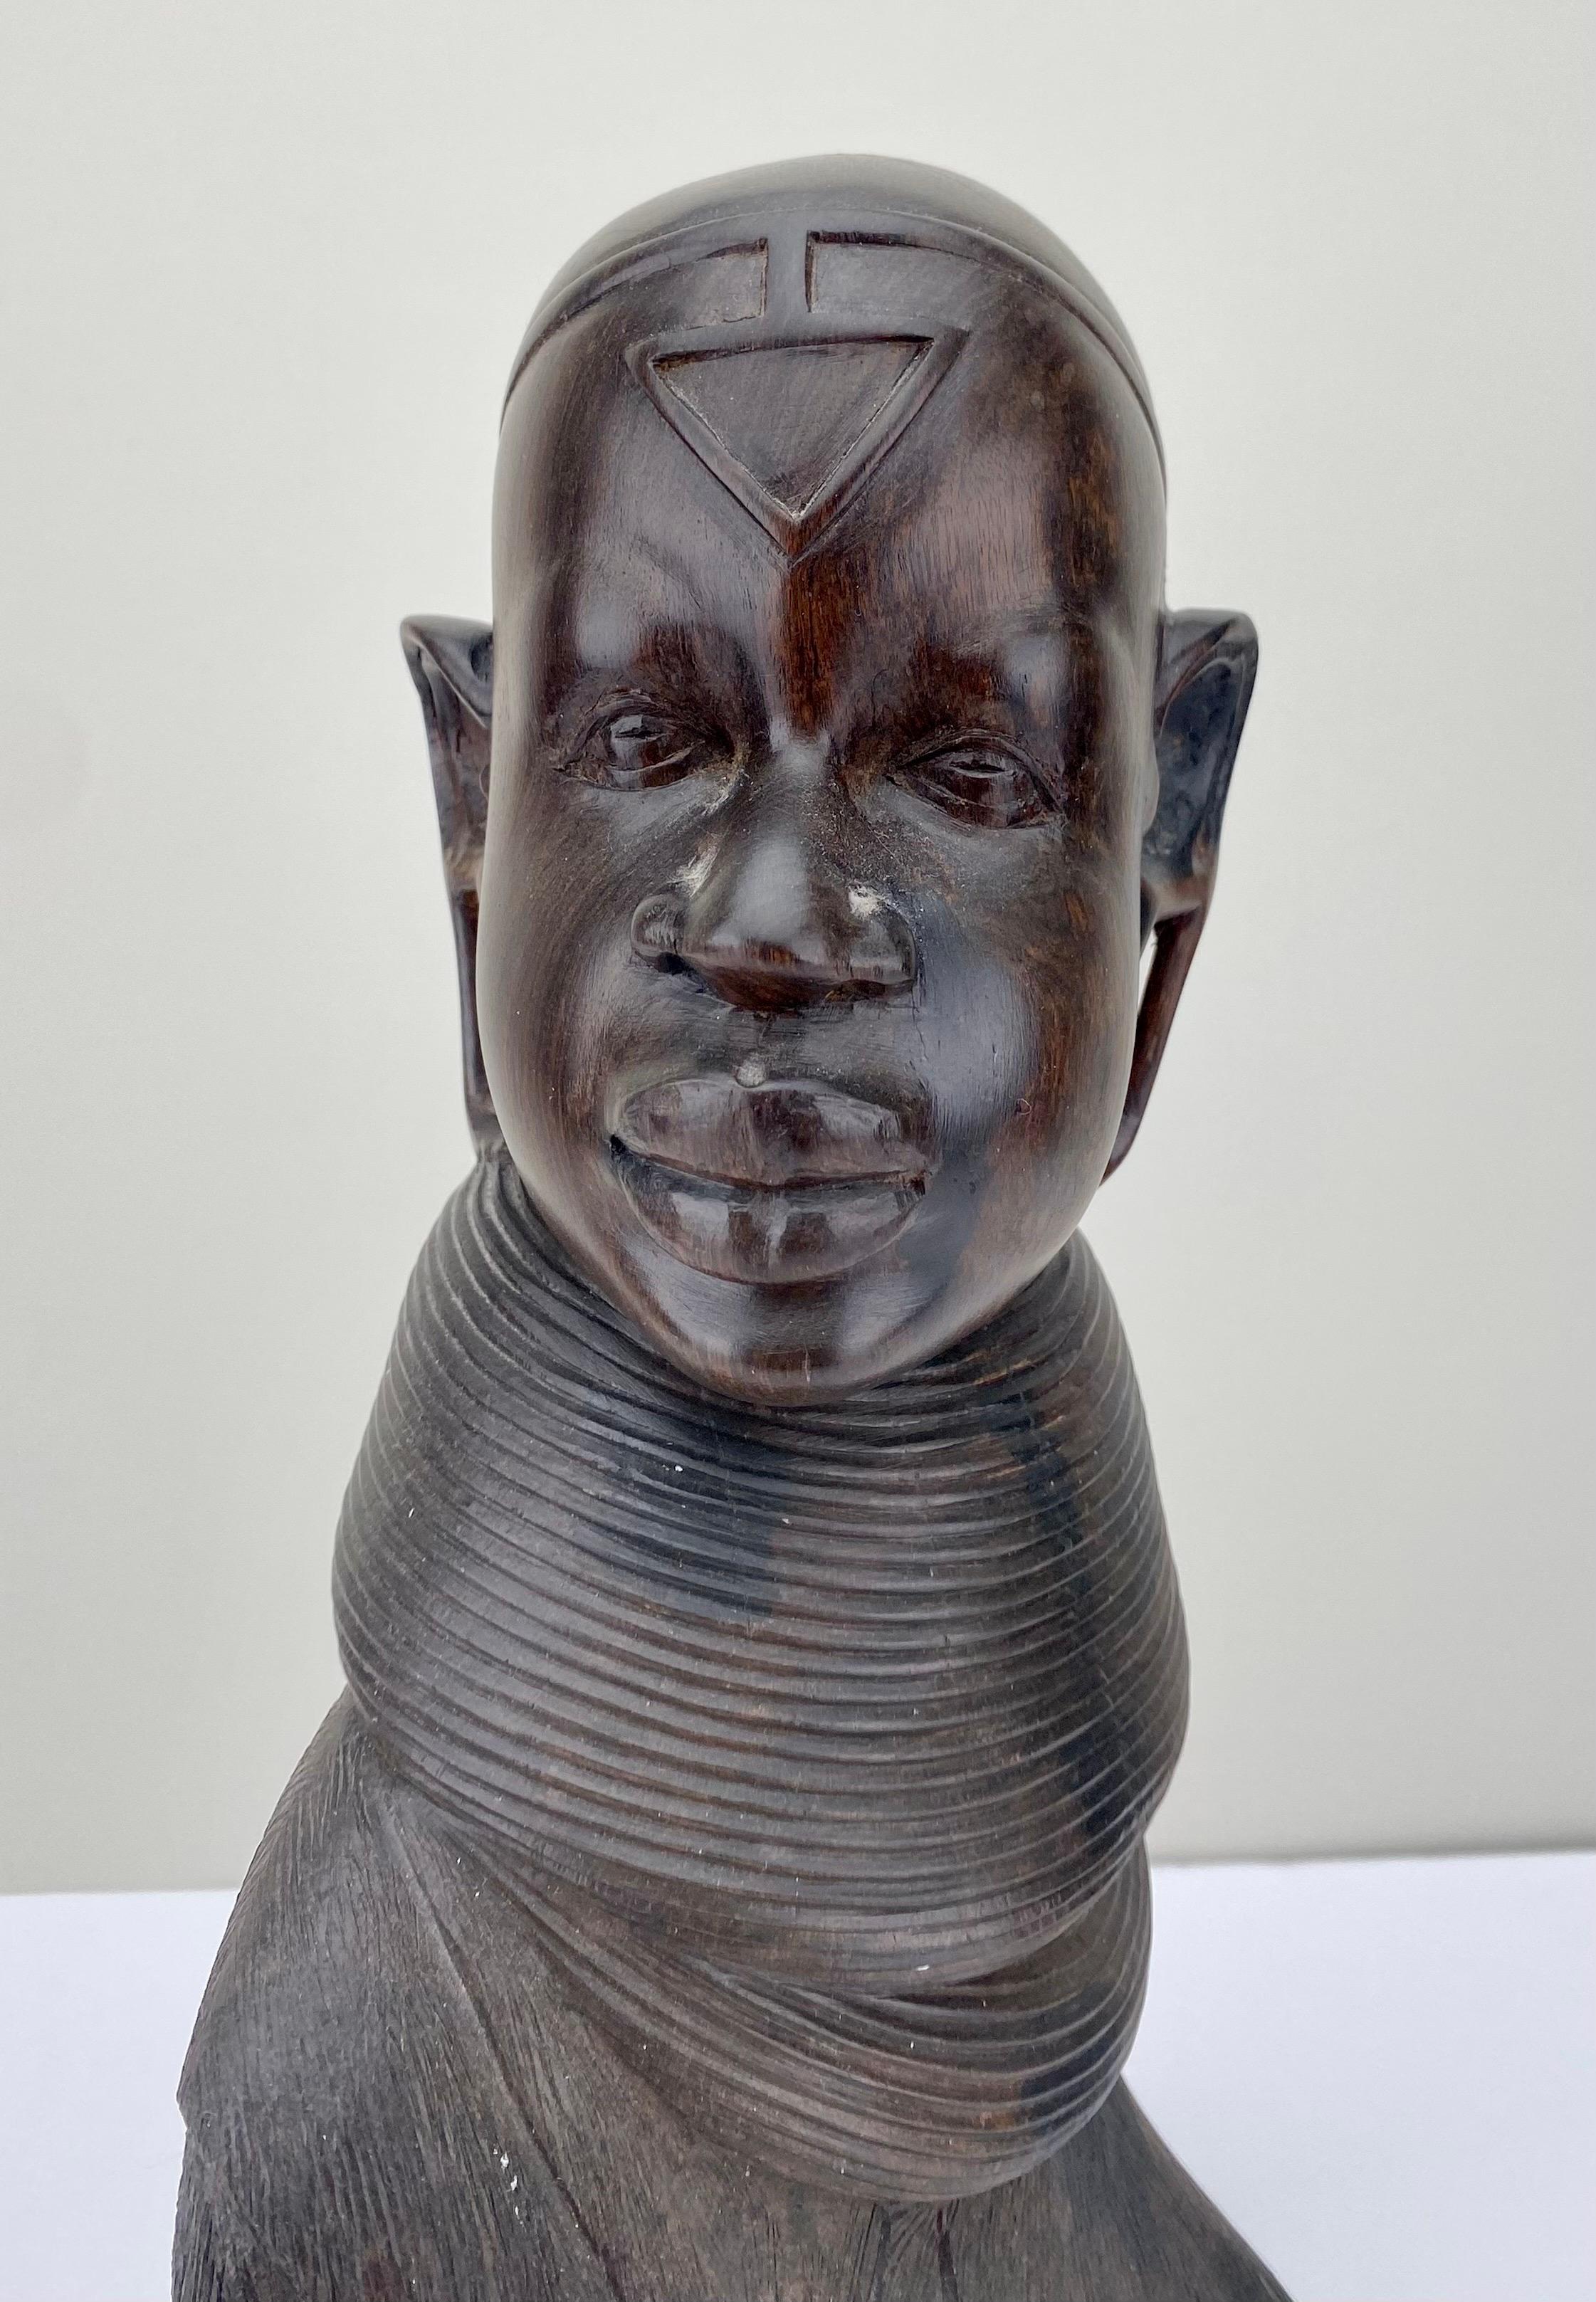  Un buste de femme africaine, méticuleusement sculpté à la main dans les profondeurs lustrées du bois d'ébène. Cette création magistrale rend hommage au riche héritage de l'artisanat africain. 
La sculpture dévoile délicatement les détails complexes